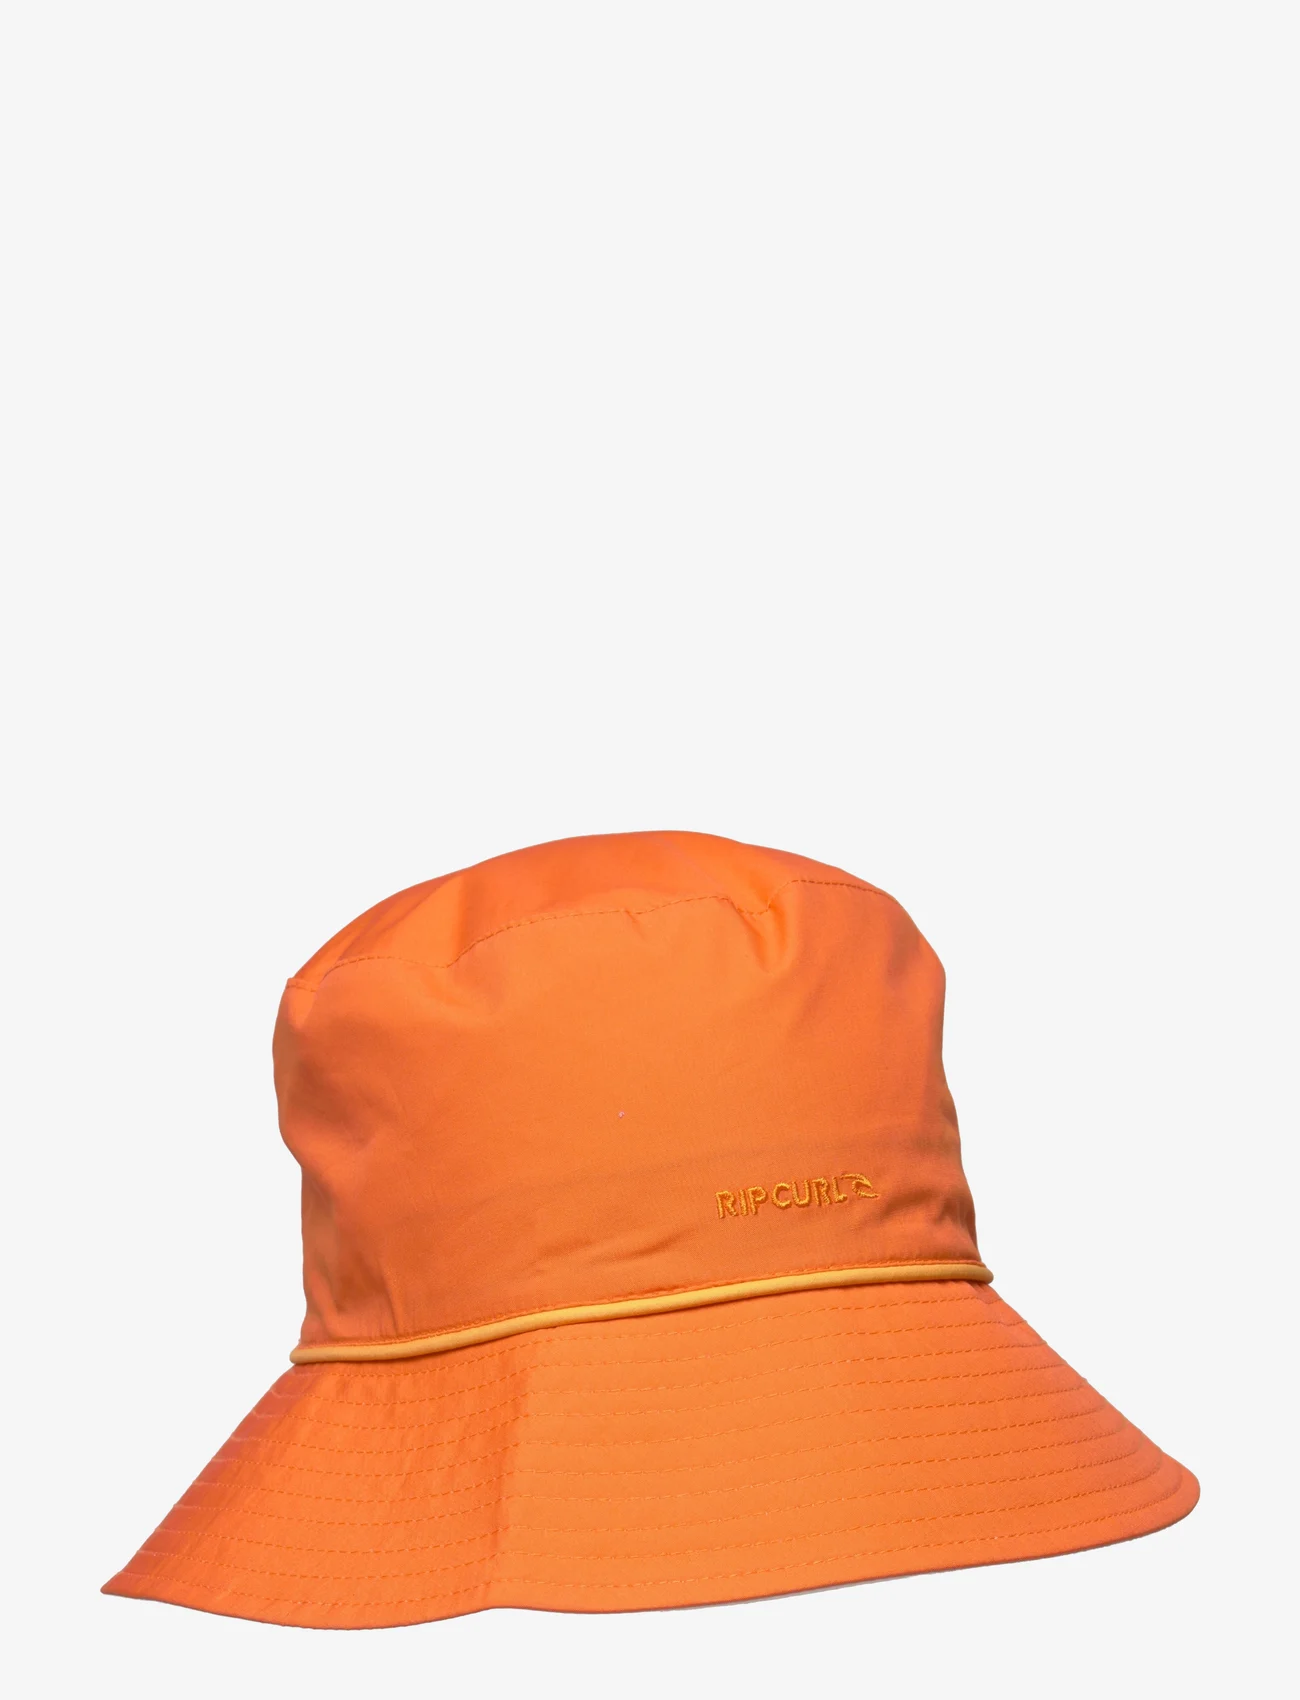 Rip Curl - BOB REVO BUCKET HAT - najniższe ceny - dusty orange - 0